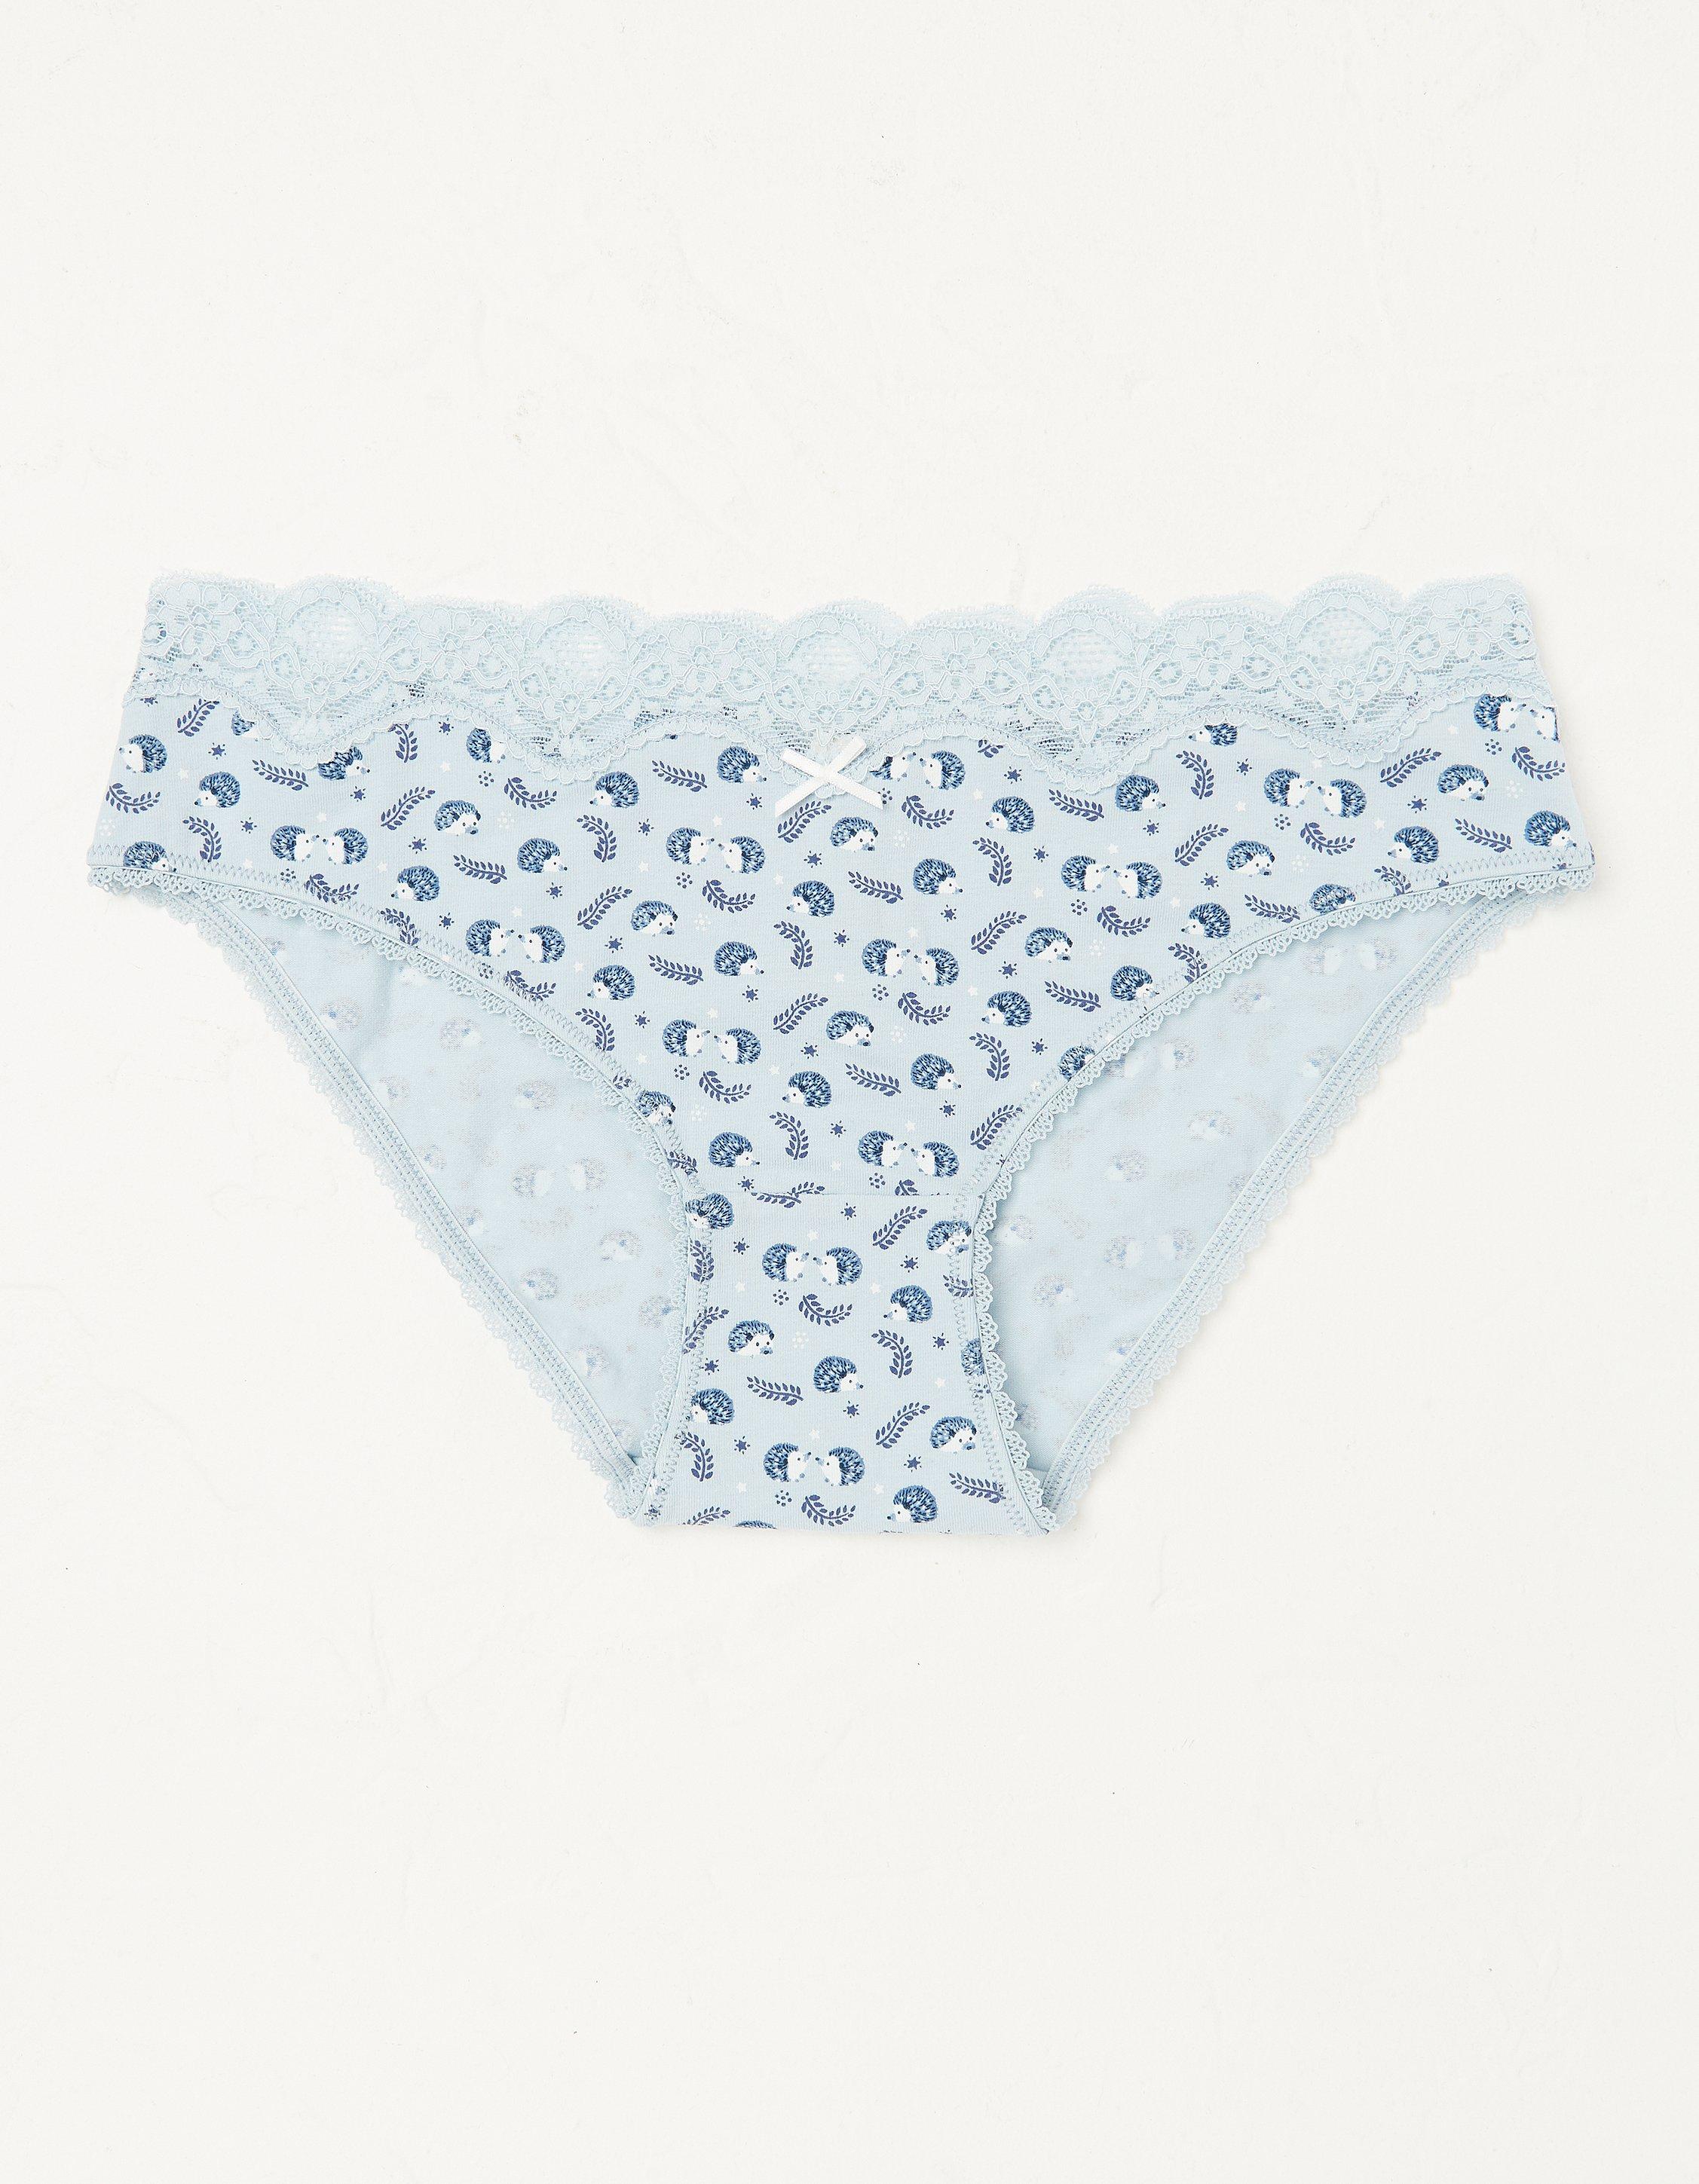 Hedgehog Lace Mini Briefs, Socks, Underwear & Tights